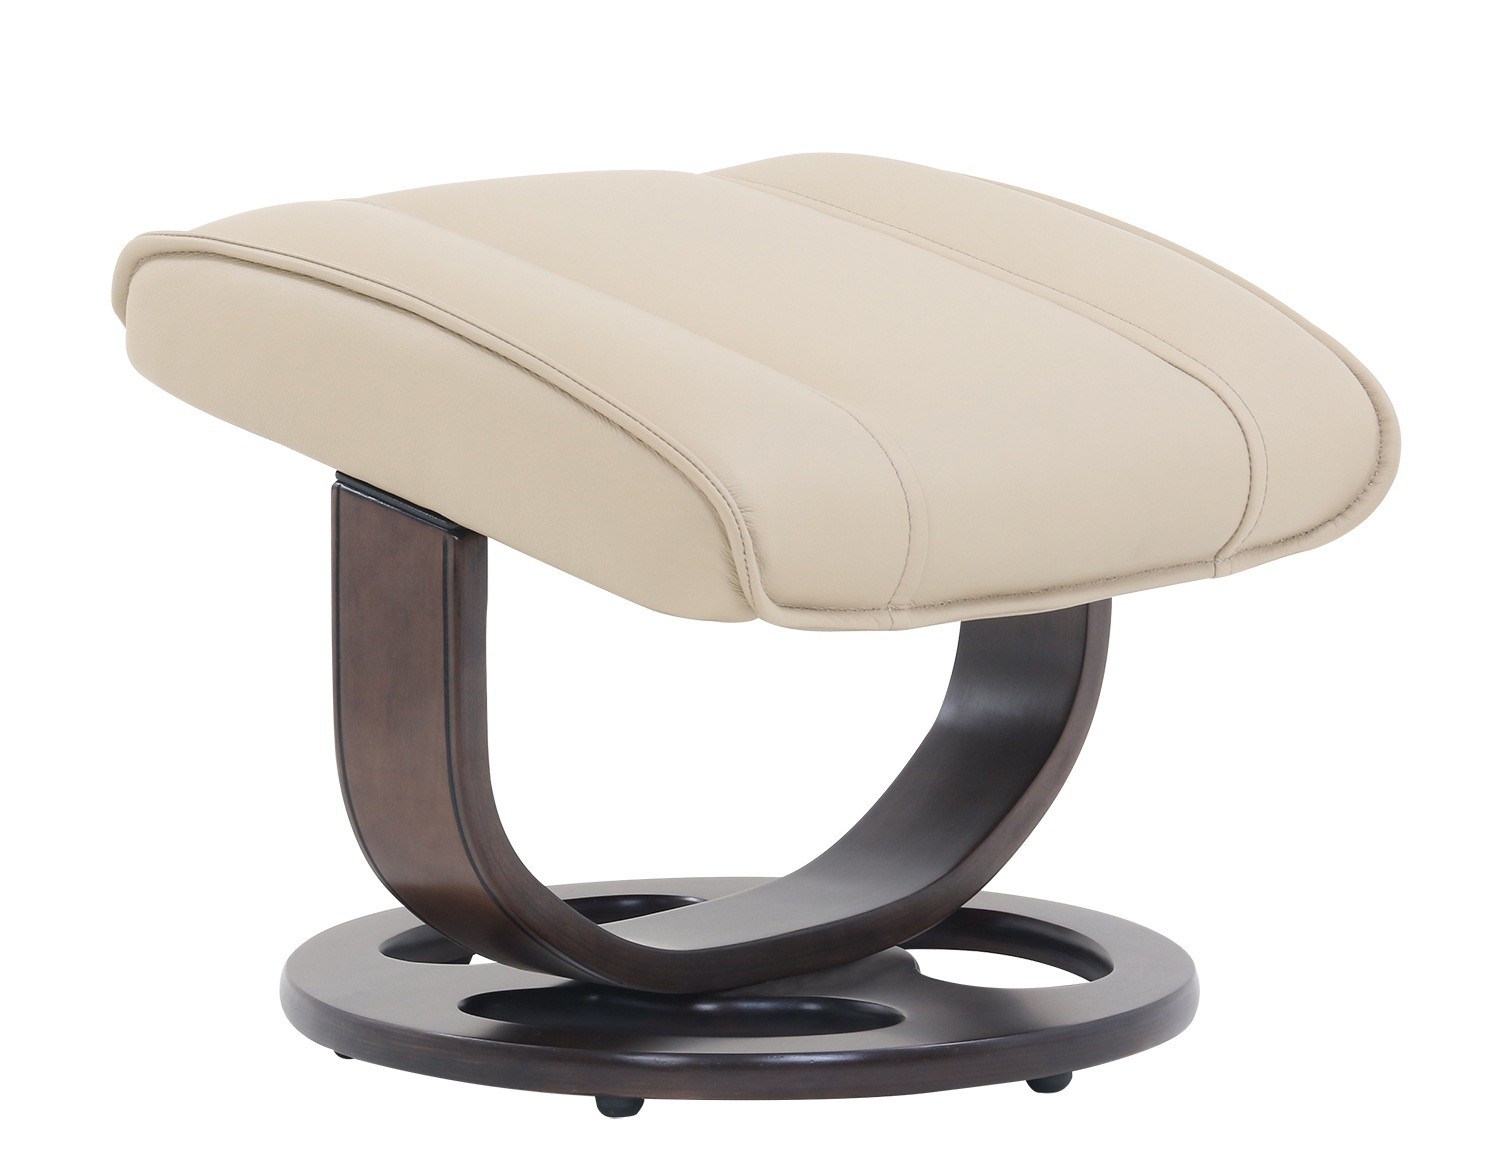 Barcalounger Austin Pedestal Recliner Chair/Ottoman - Hilton Ivory/Leather Match